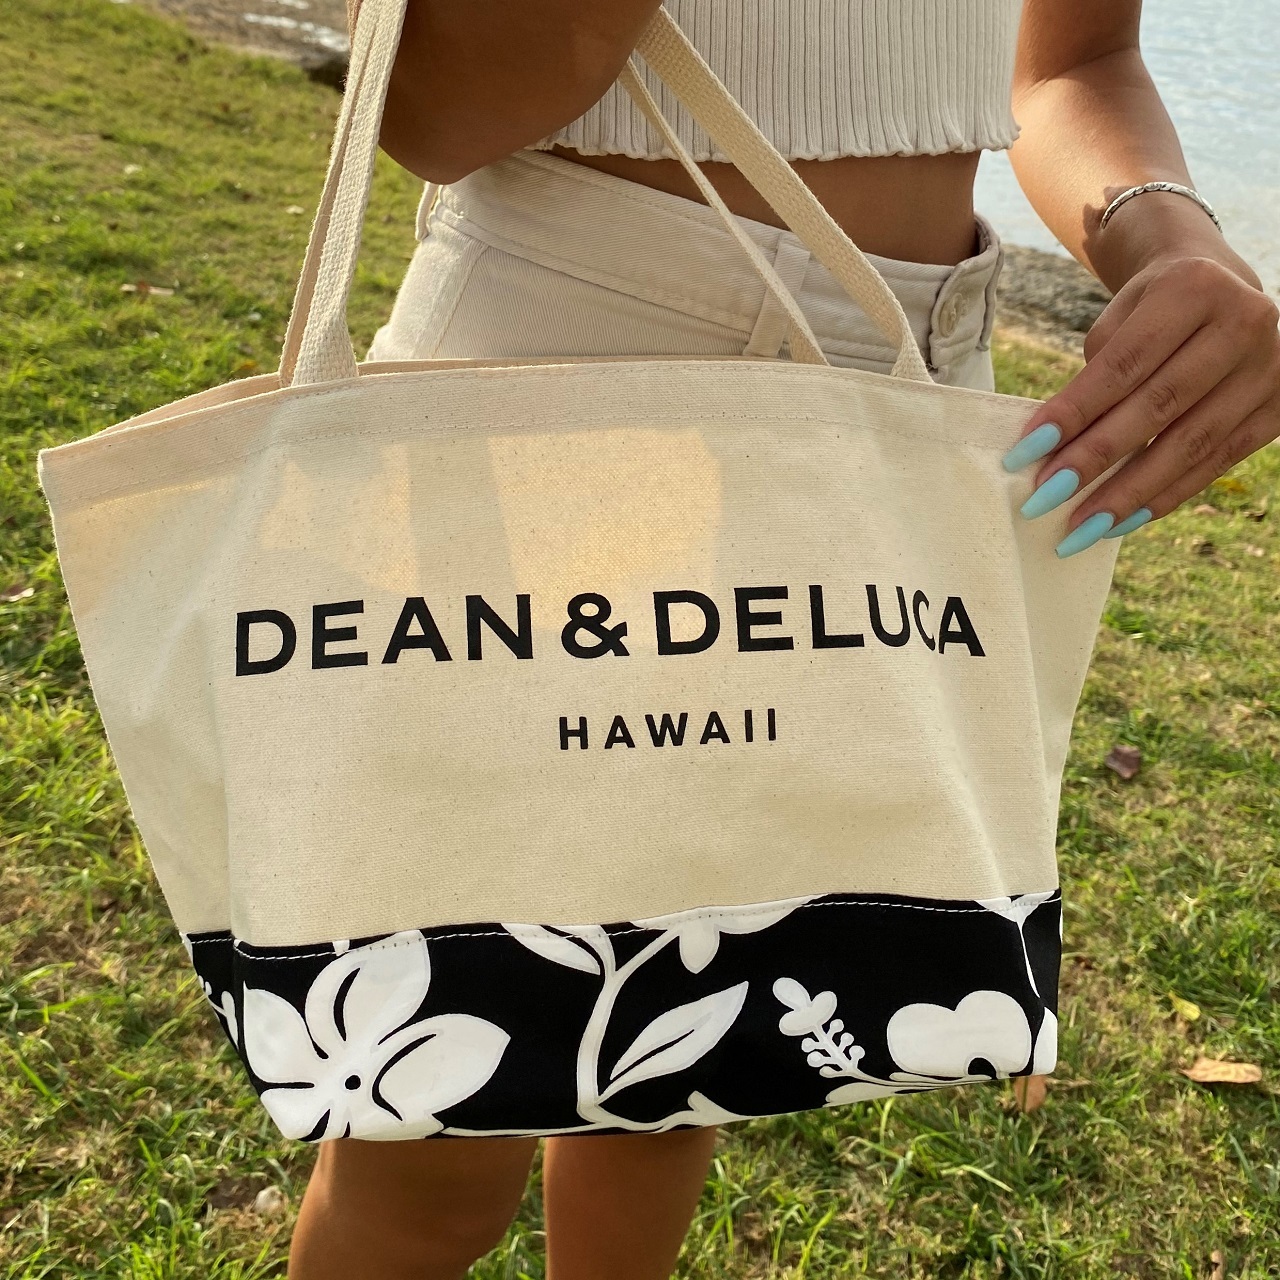 数量限定 Dean Deluca トートバック エコバッグ ハワイ限定 ハワイ直輸入 Hawaii Lovers ショッピング